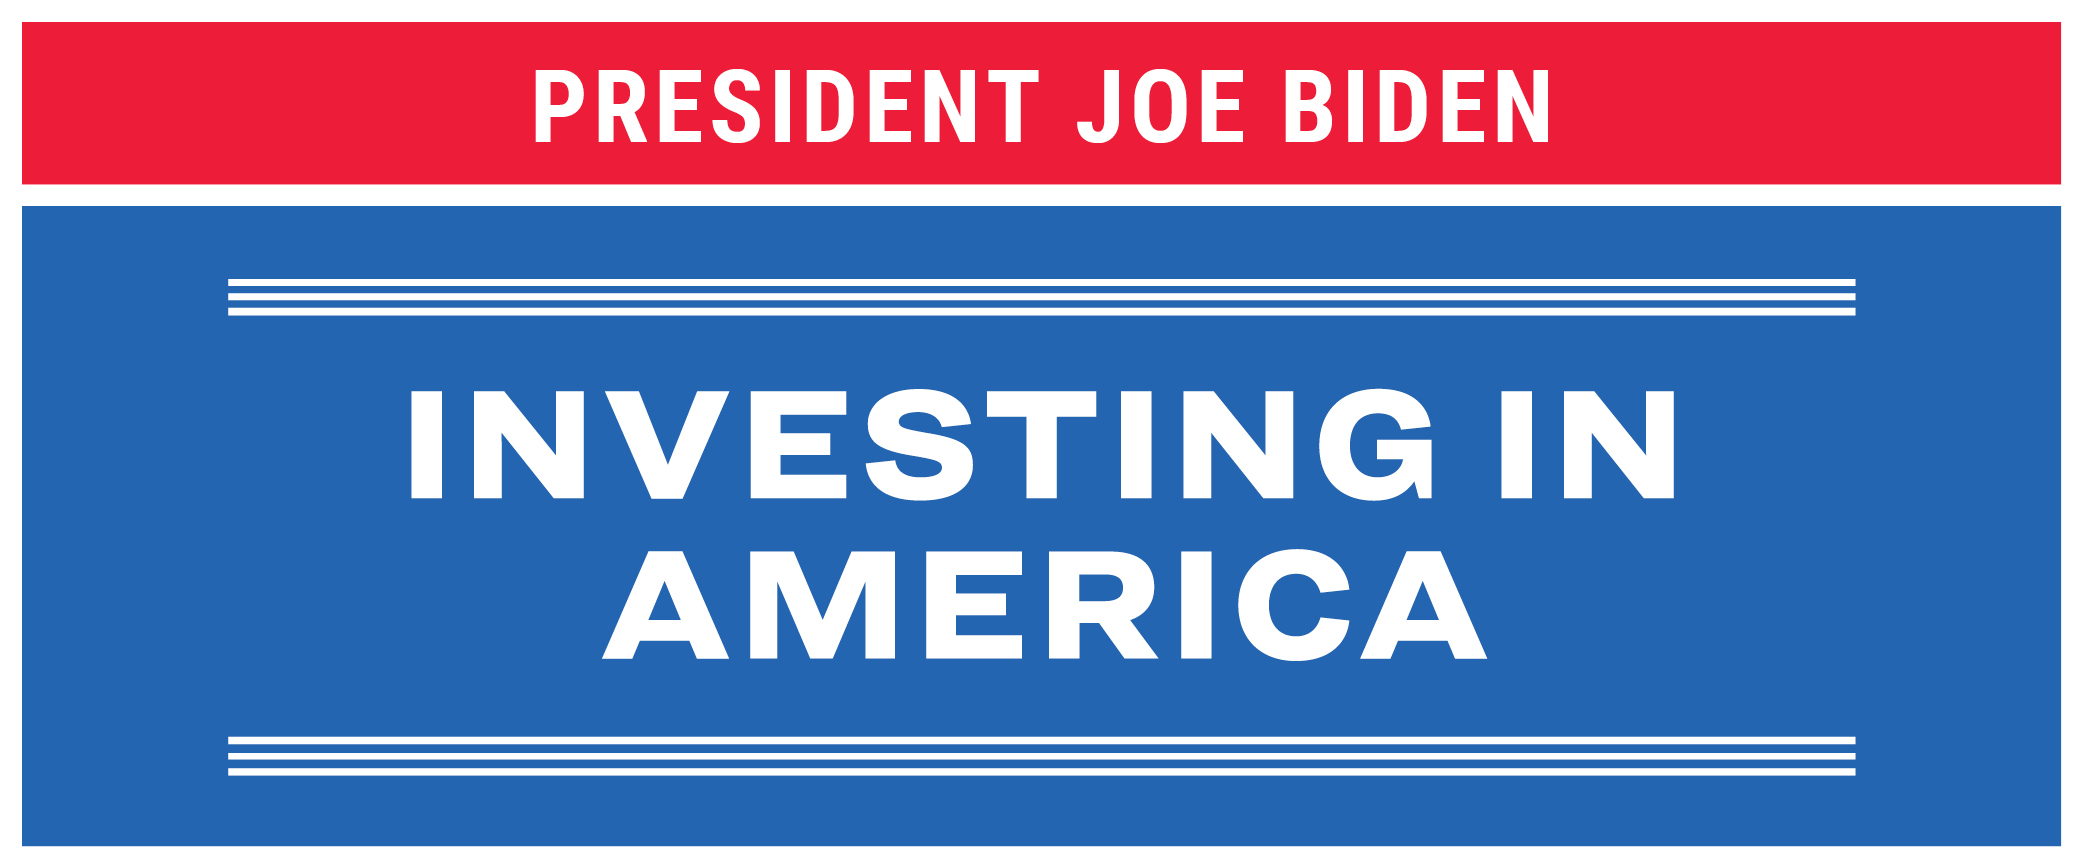 President Joe Biden, Investing in America